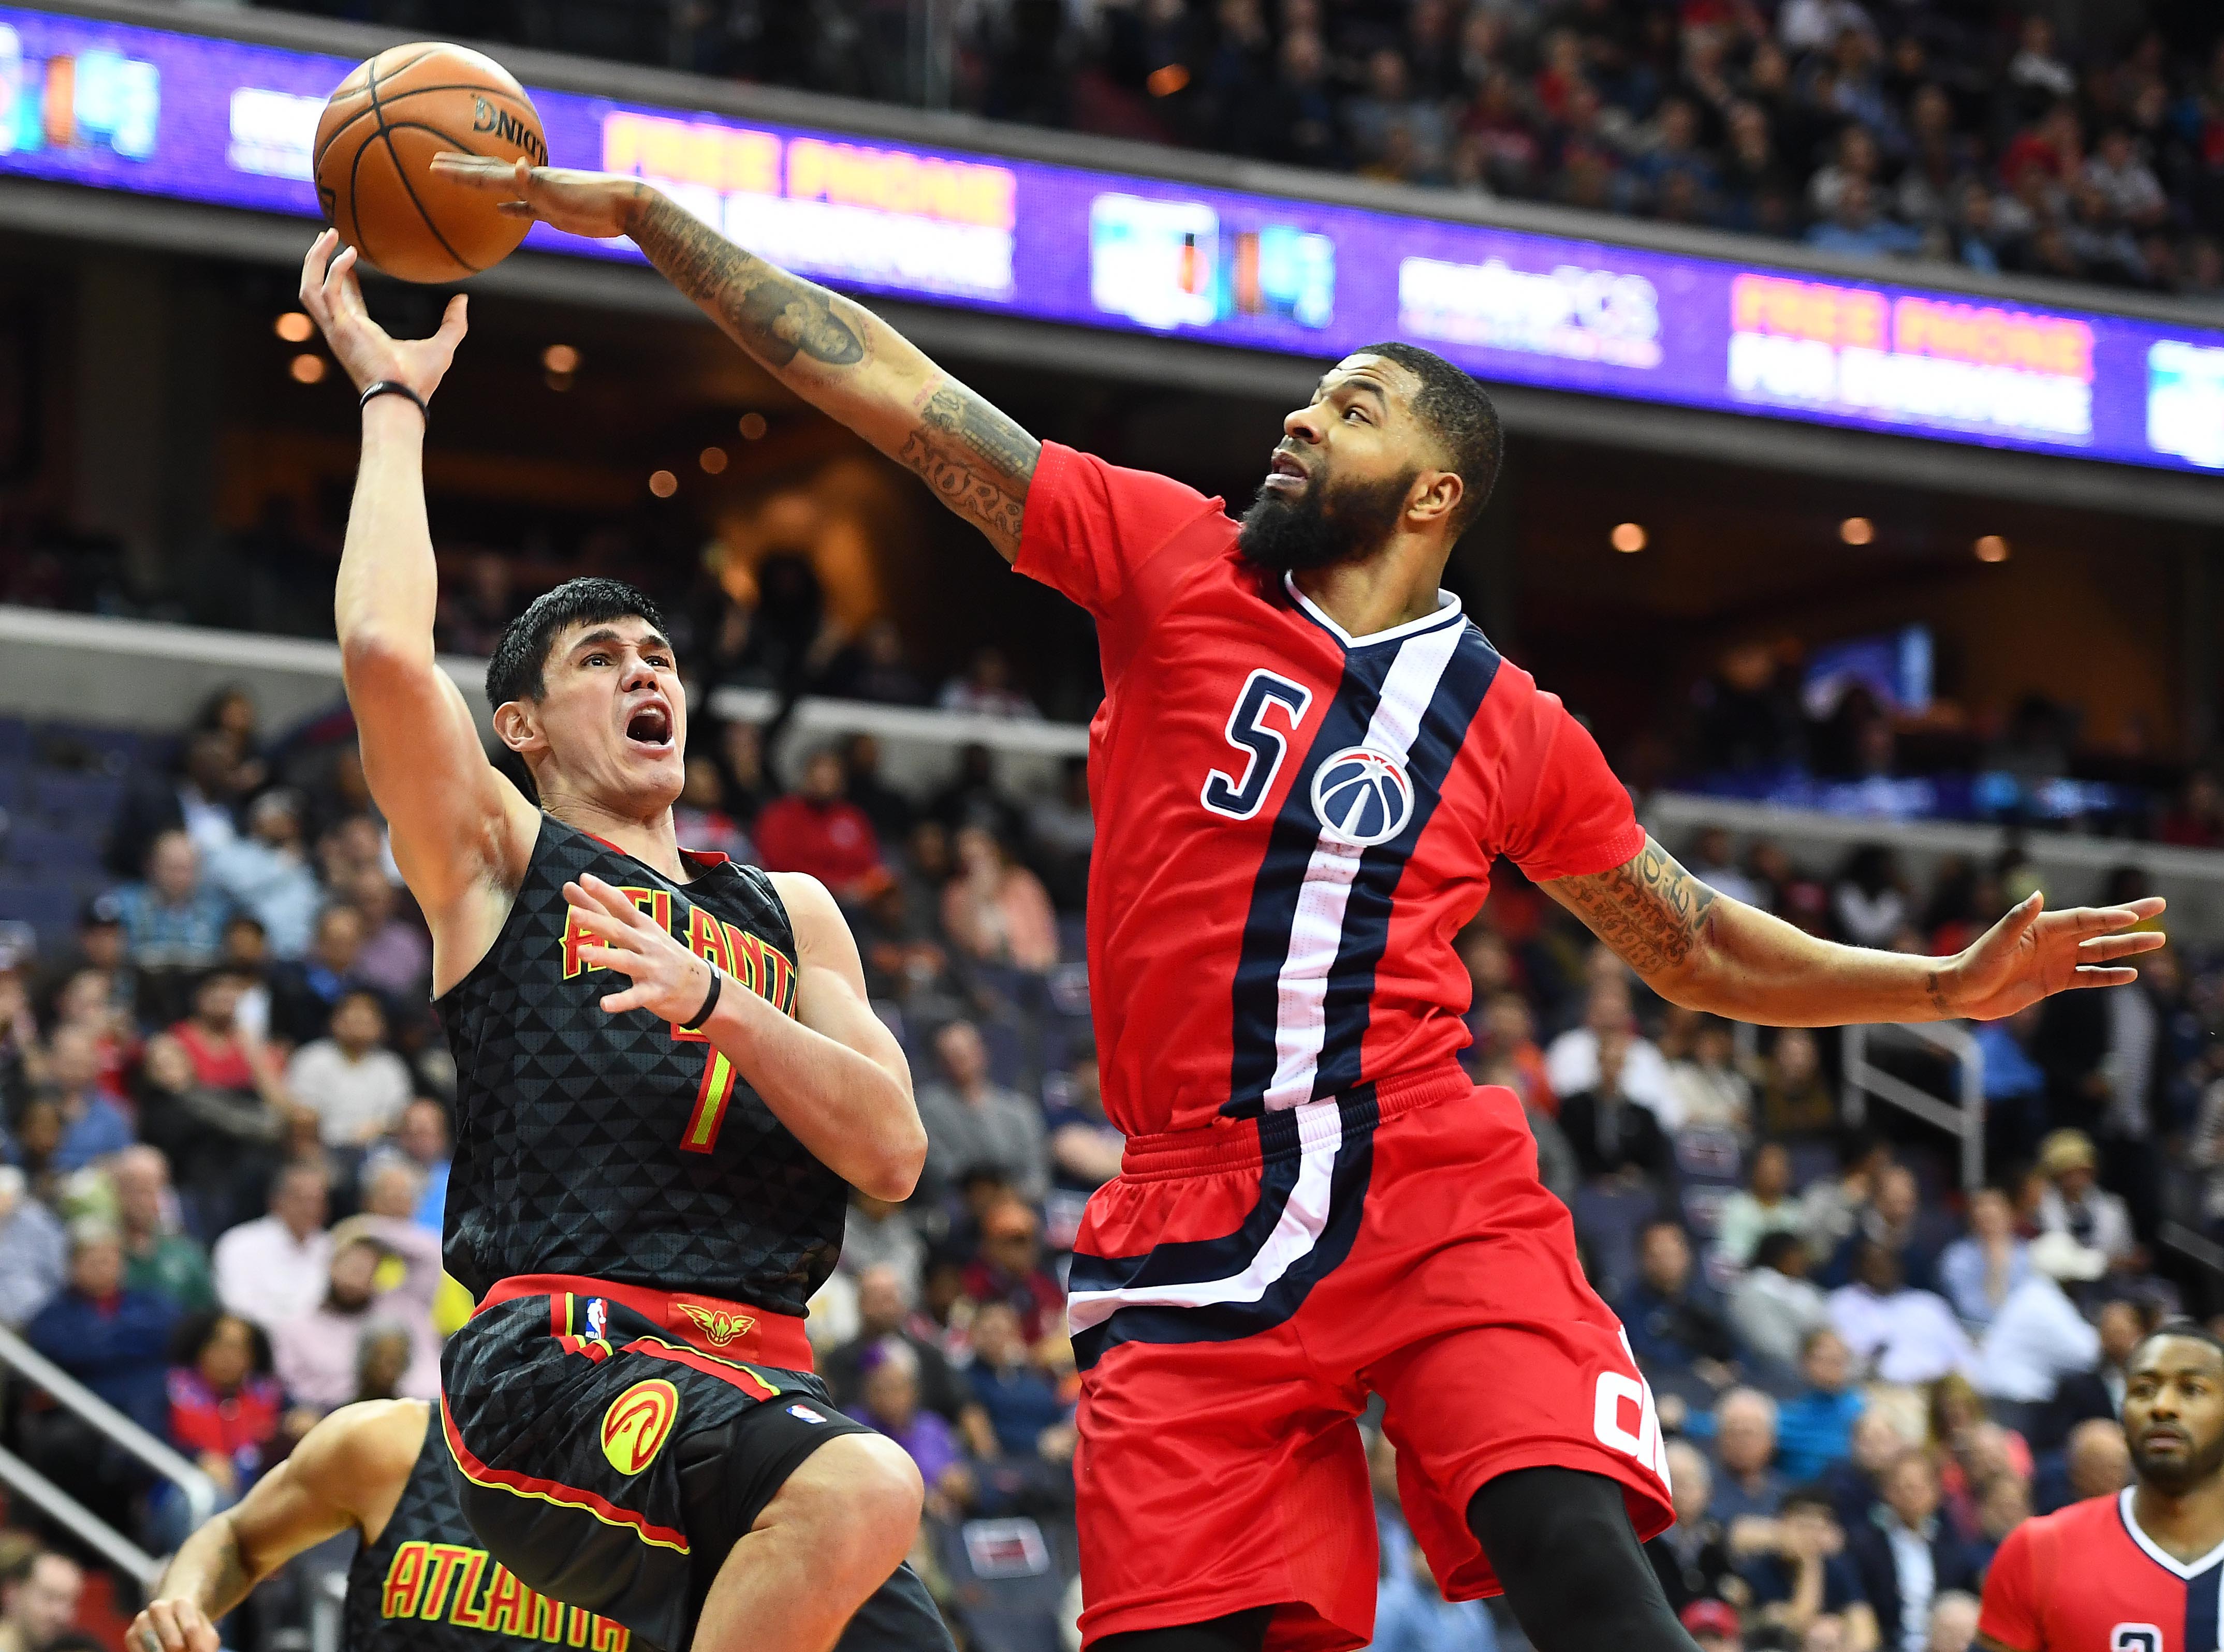 NBA Playoffs 2017: Wizards vs. Hawks Game 1 live stream: Watch online